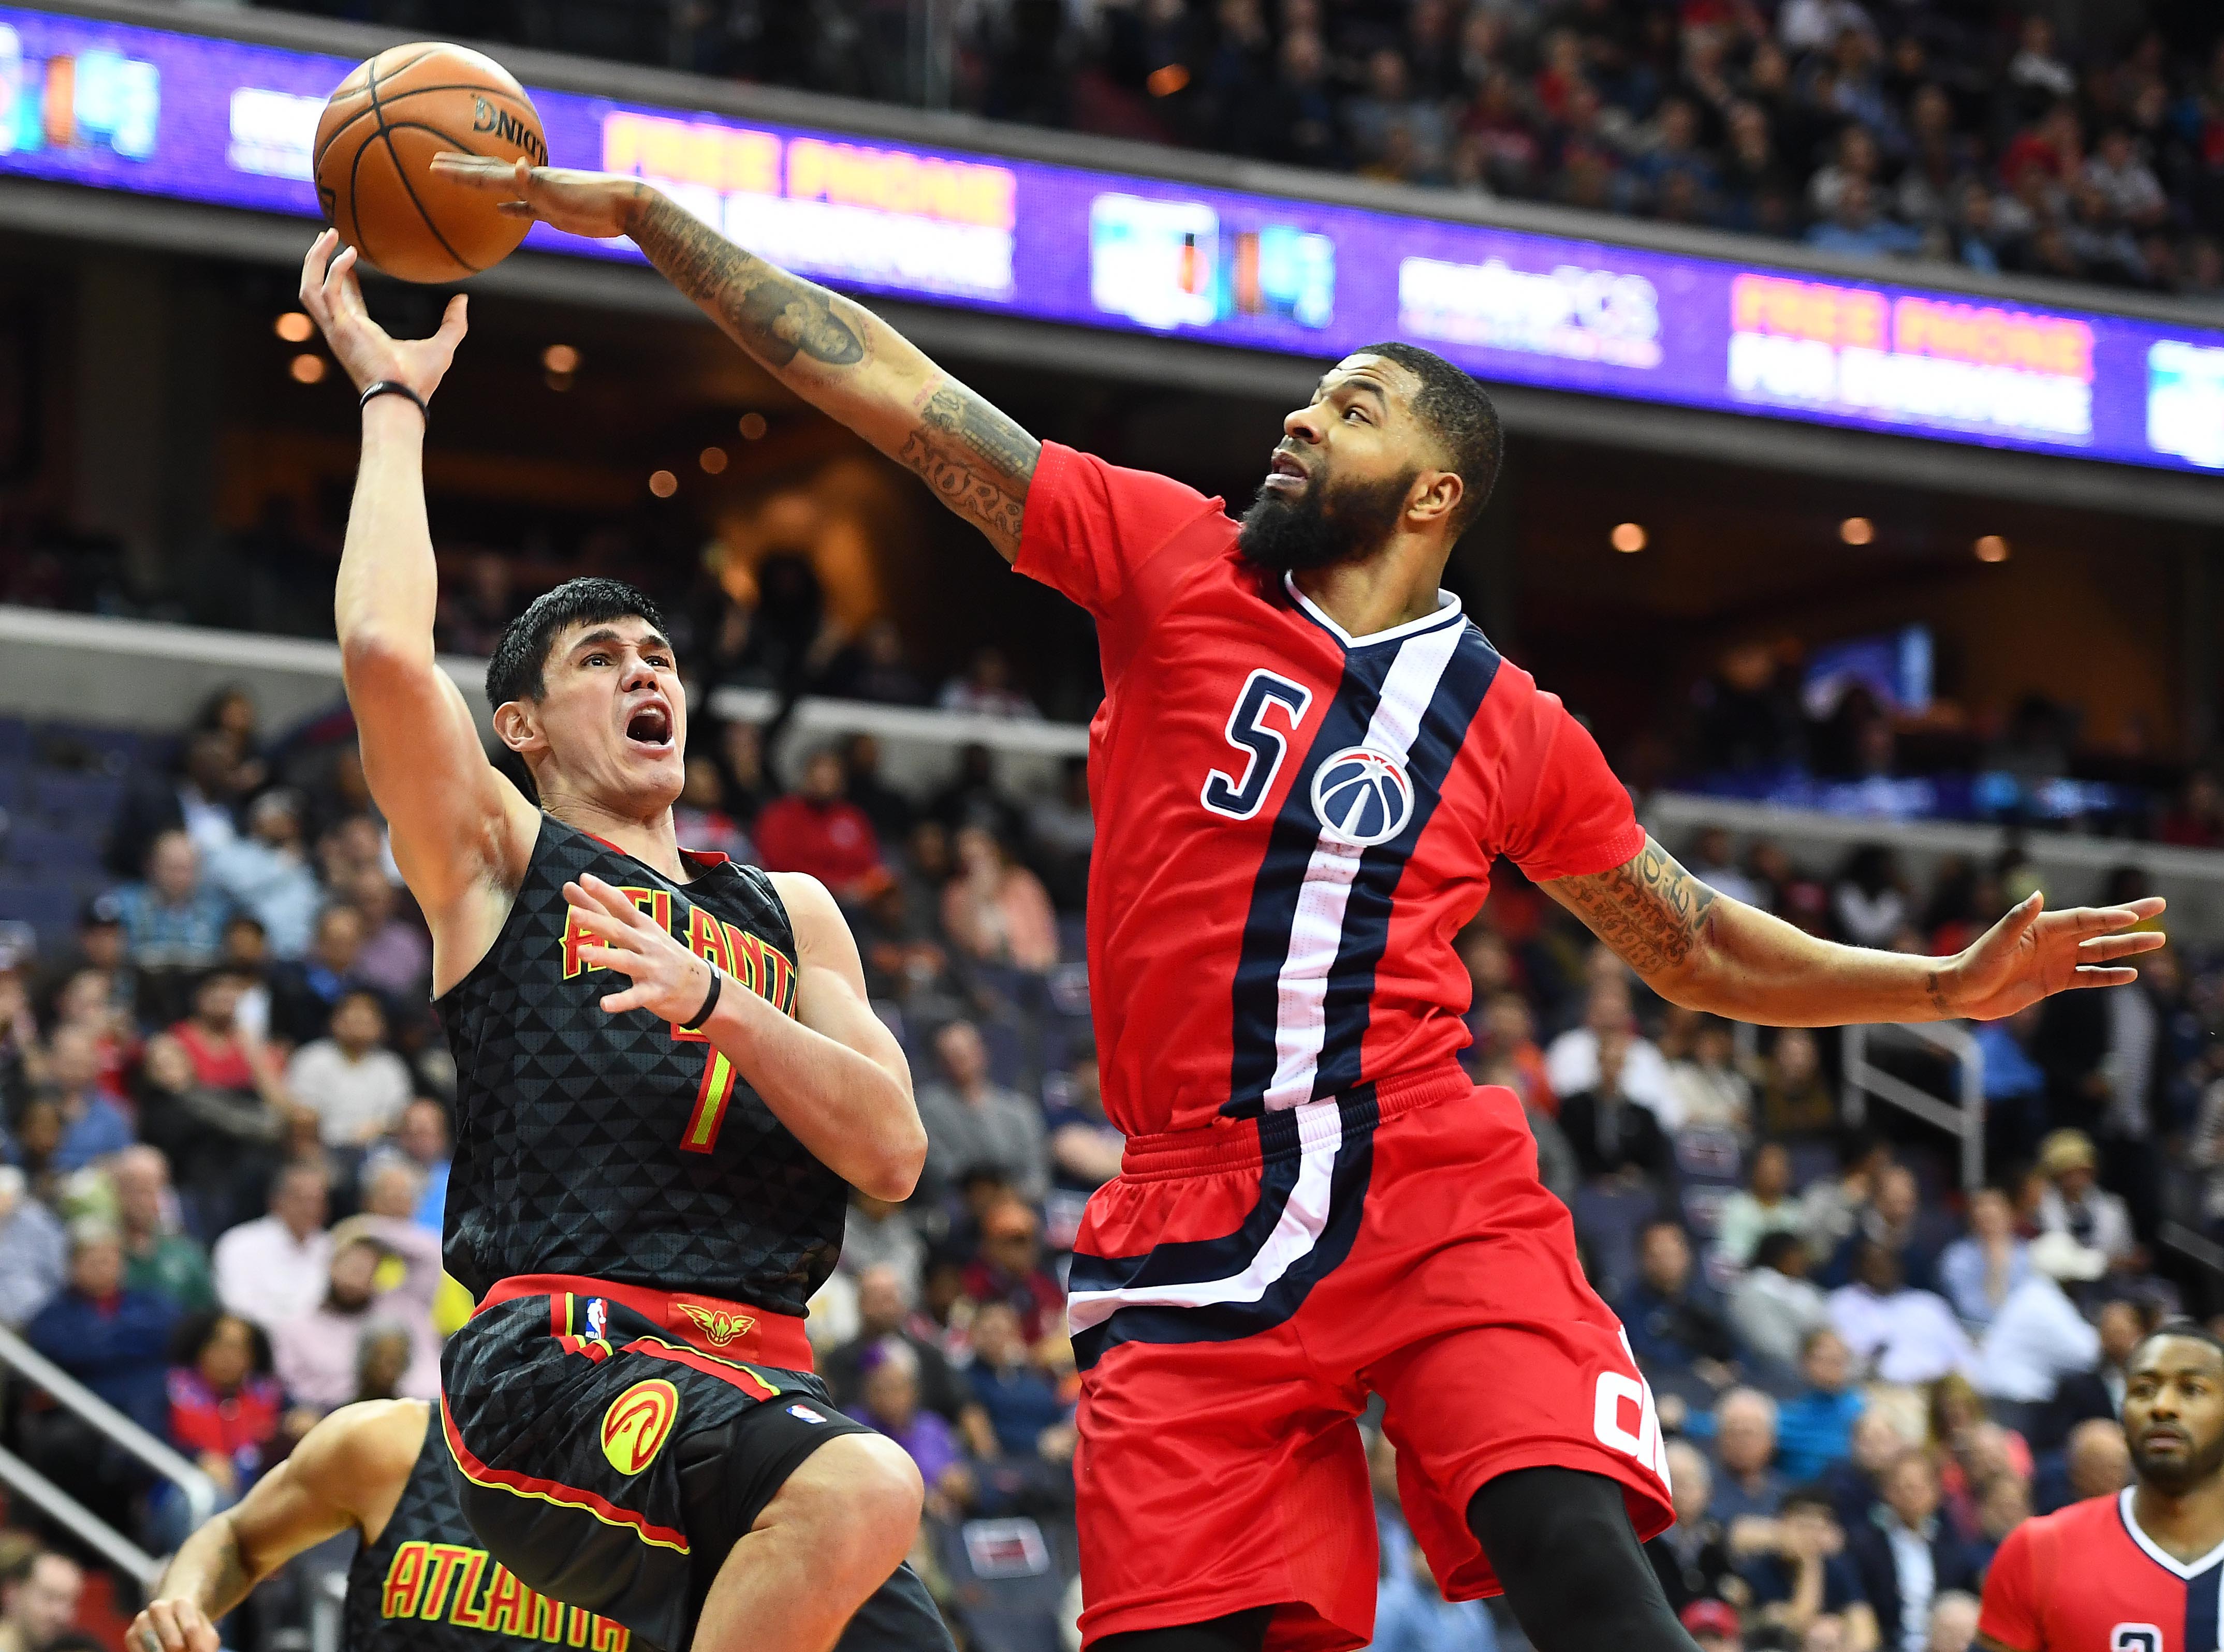 NBA Playoffs 2017: Wizards vs. Hawks Game 1 live stream: Watch online